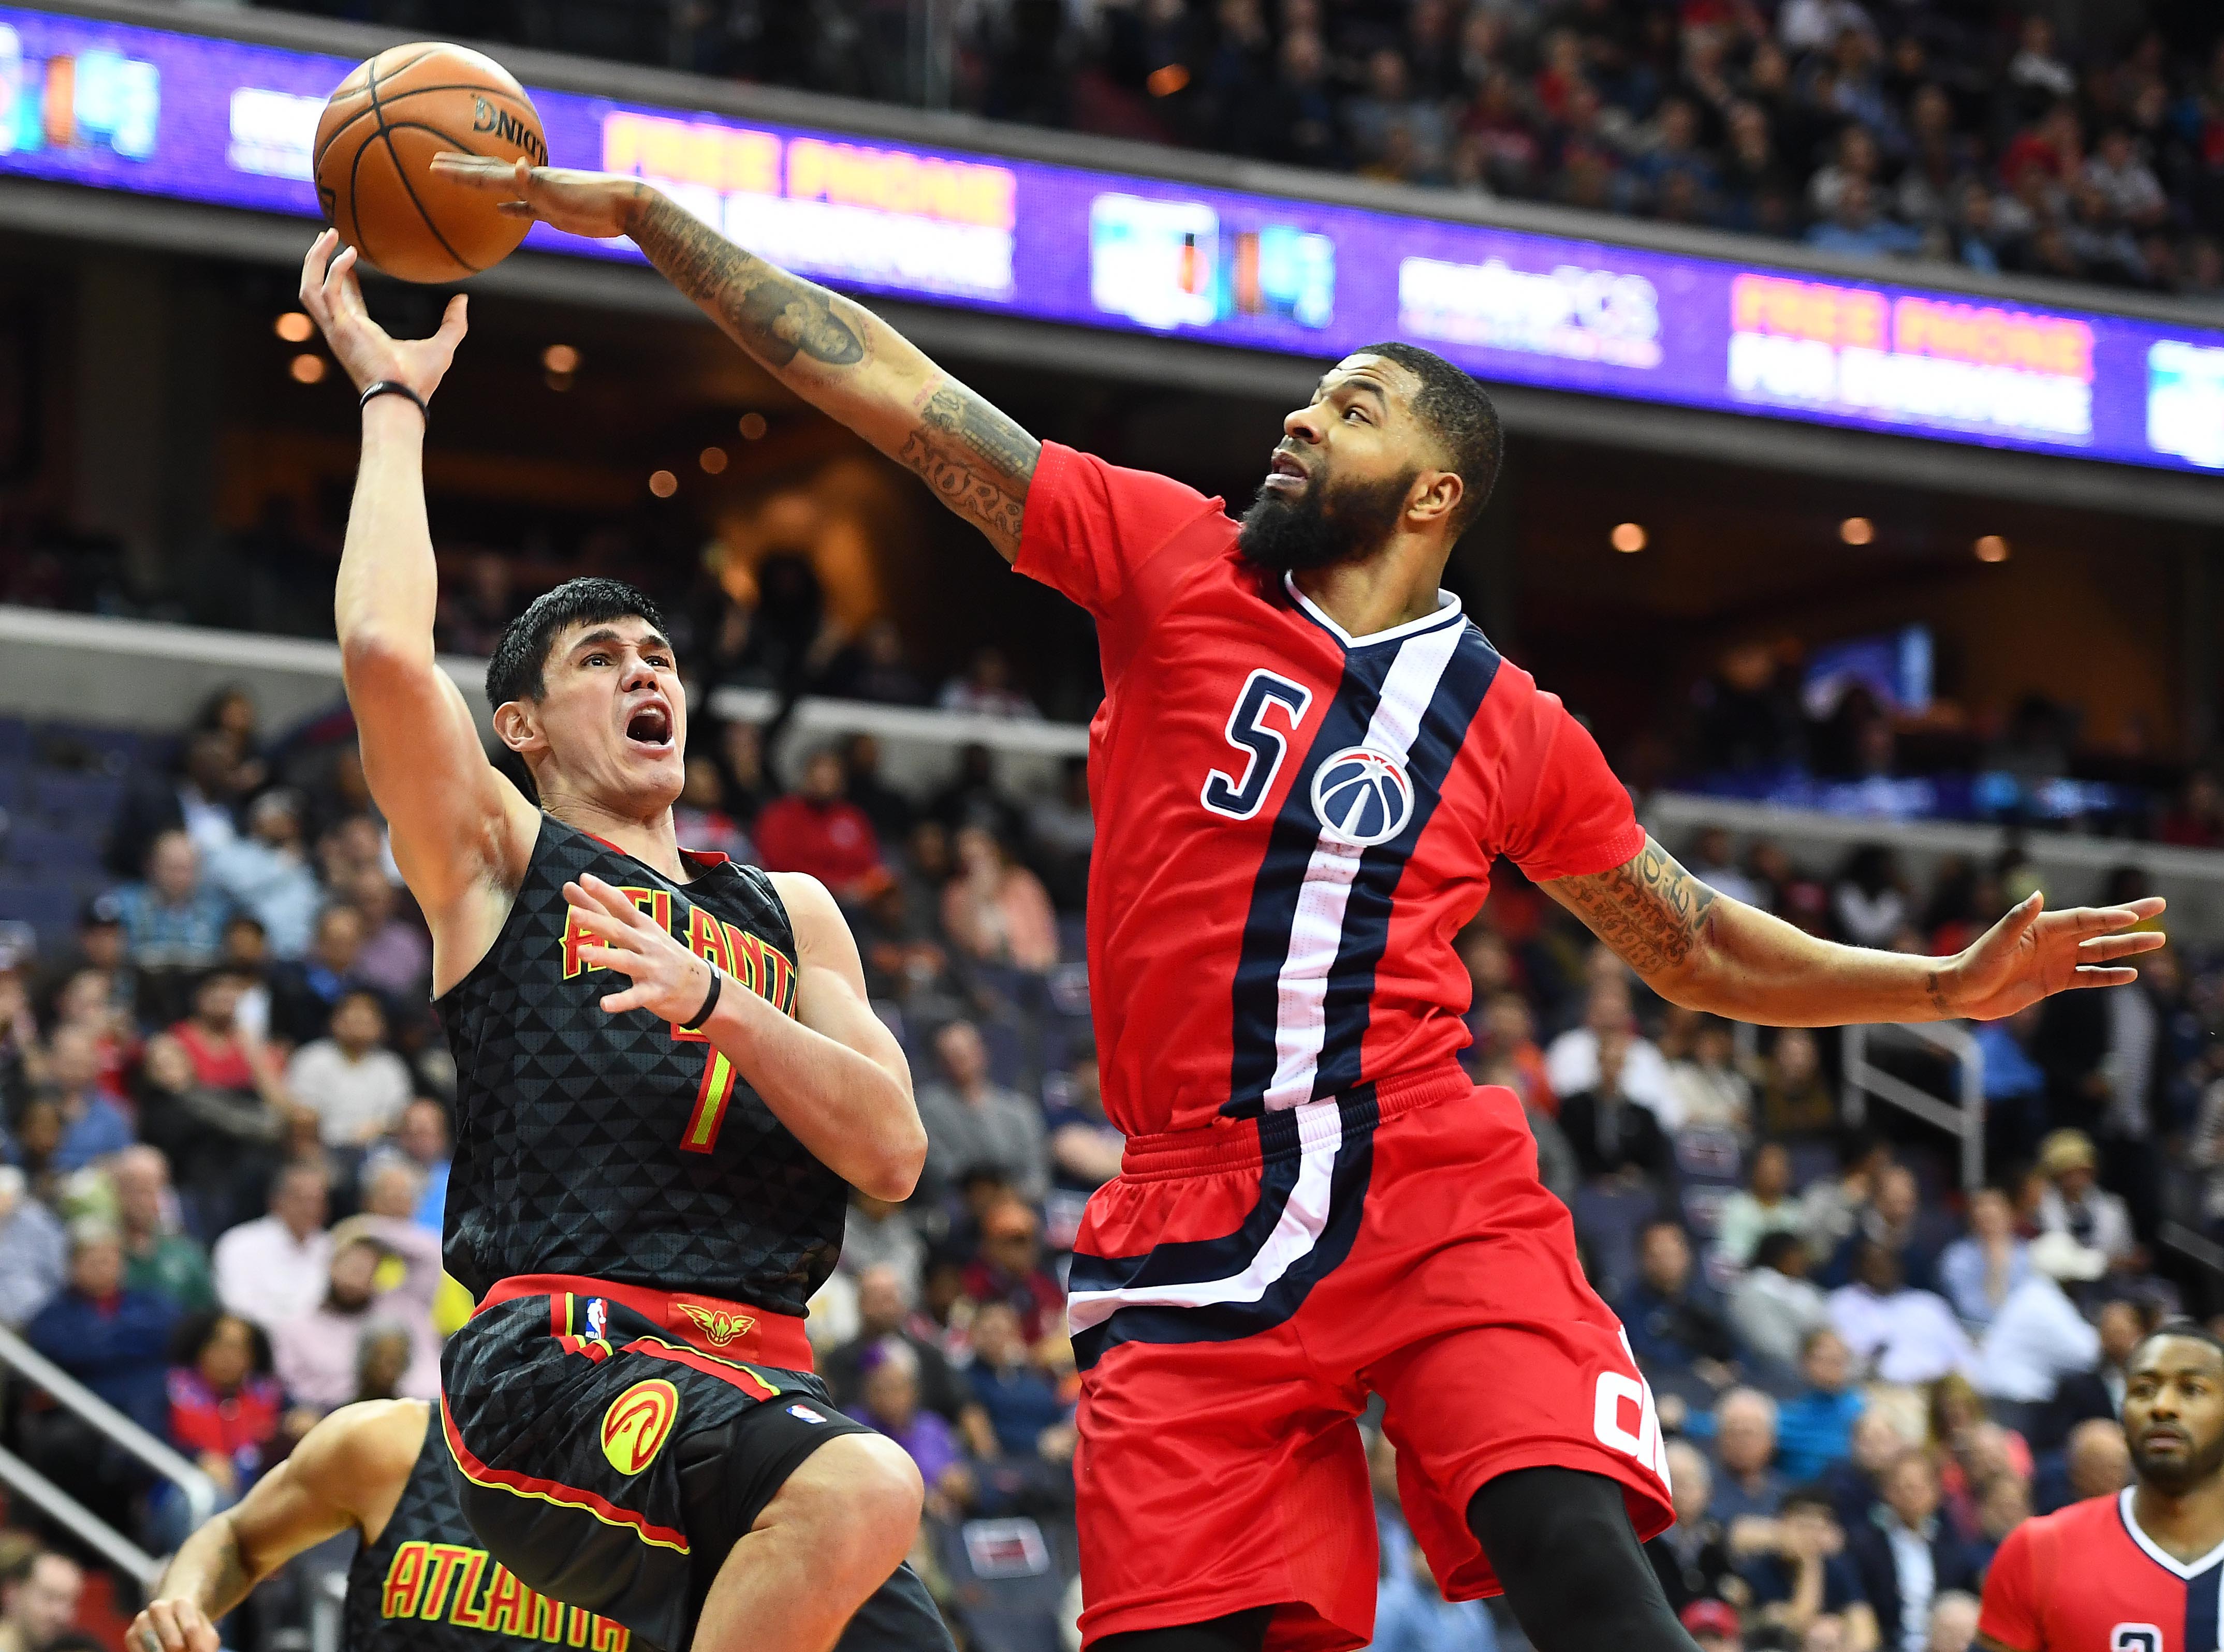 NBA Playoffs 2017: Wizards vs. Hawks Game 1 live stream: Watch online